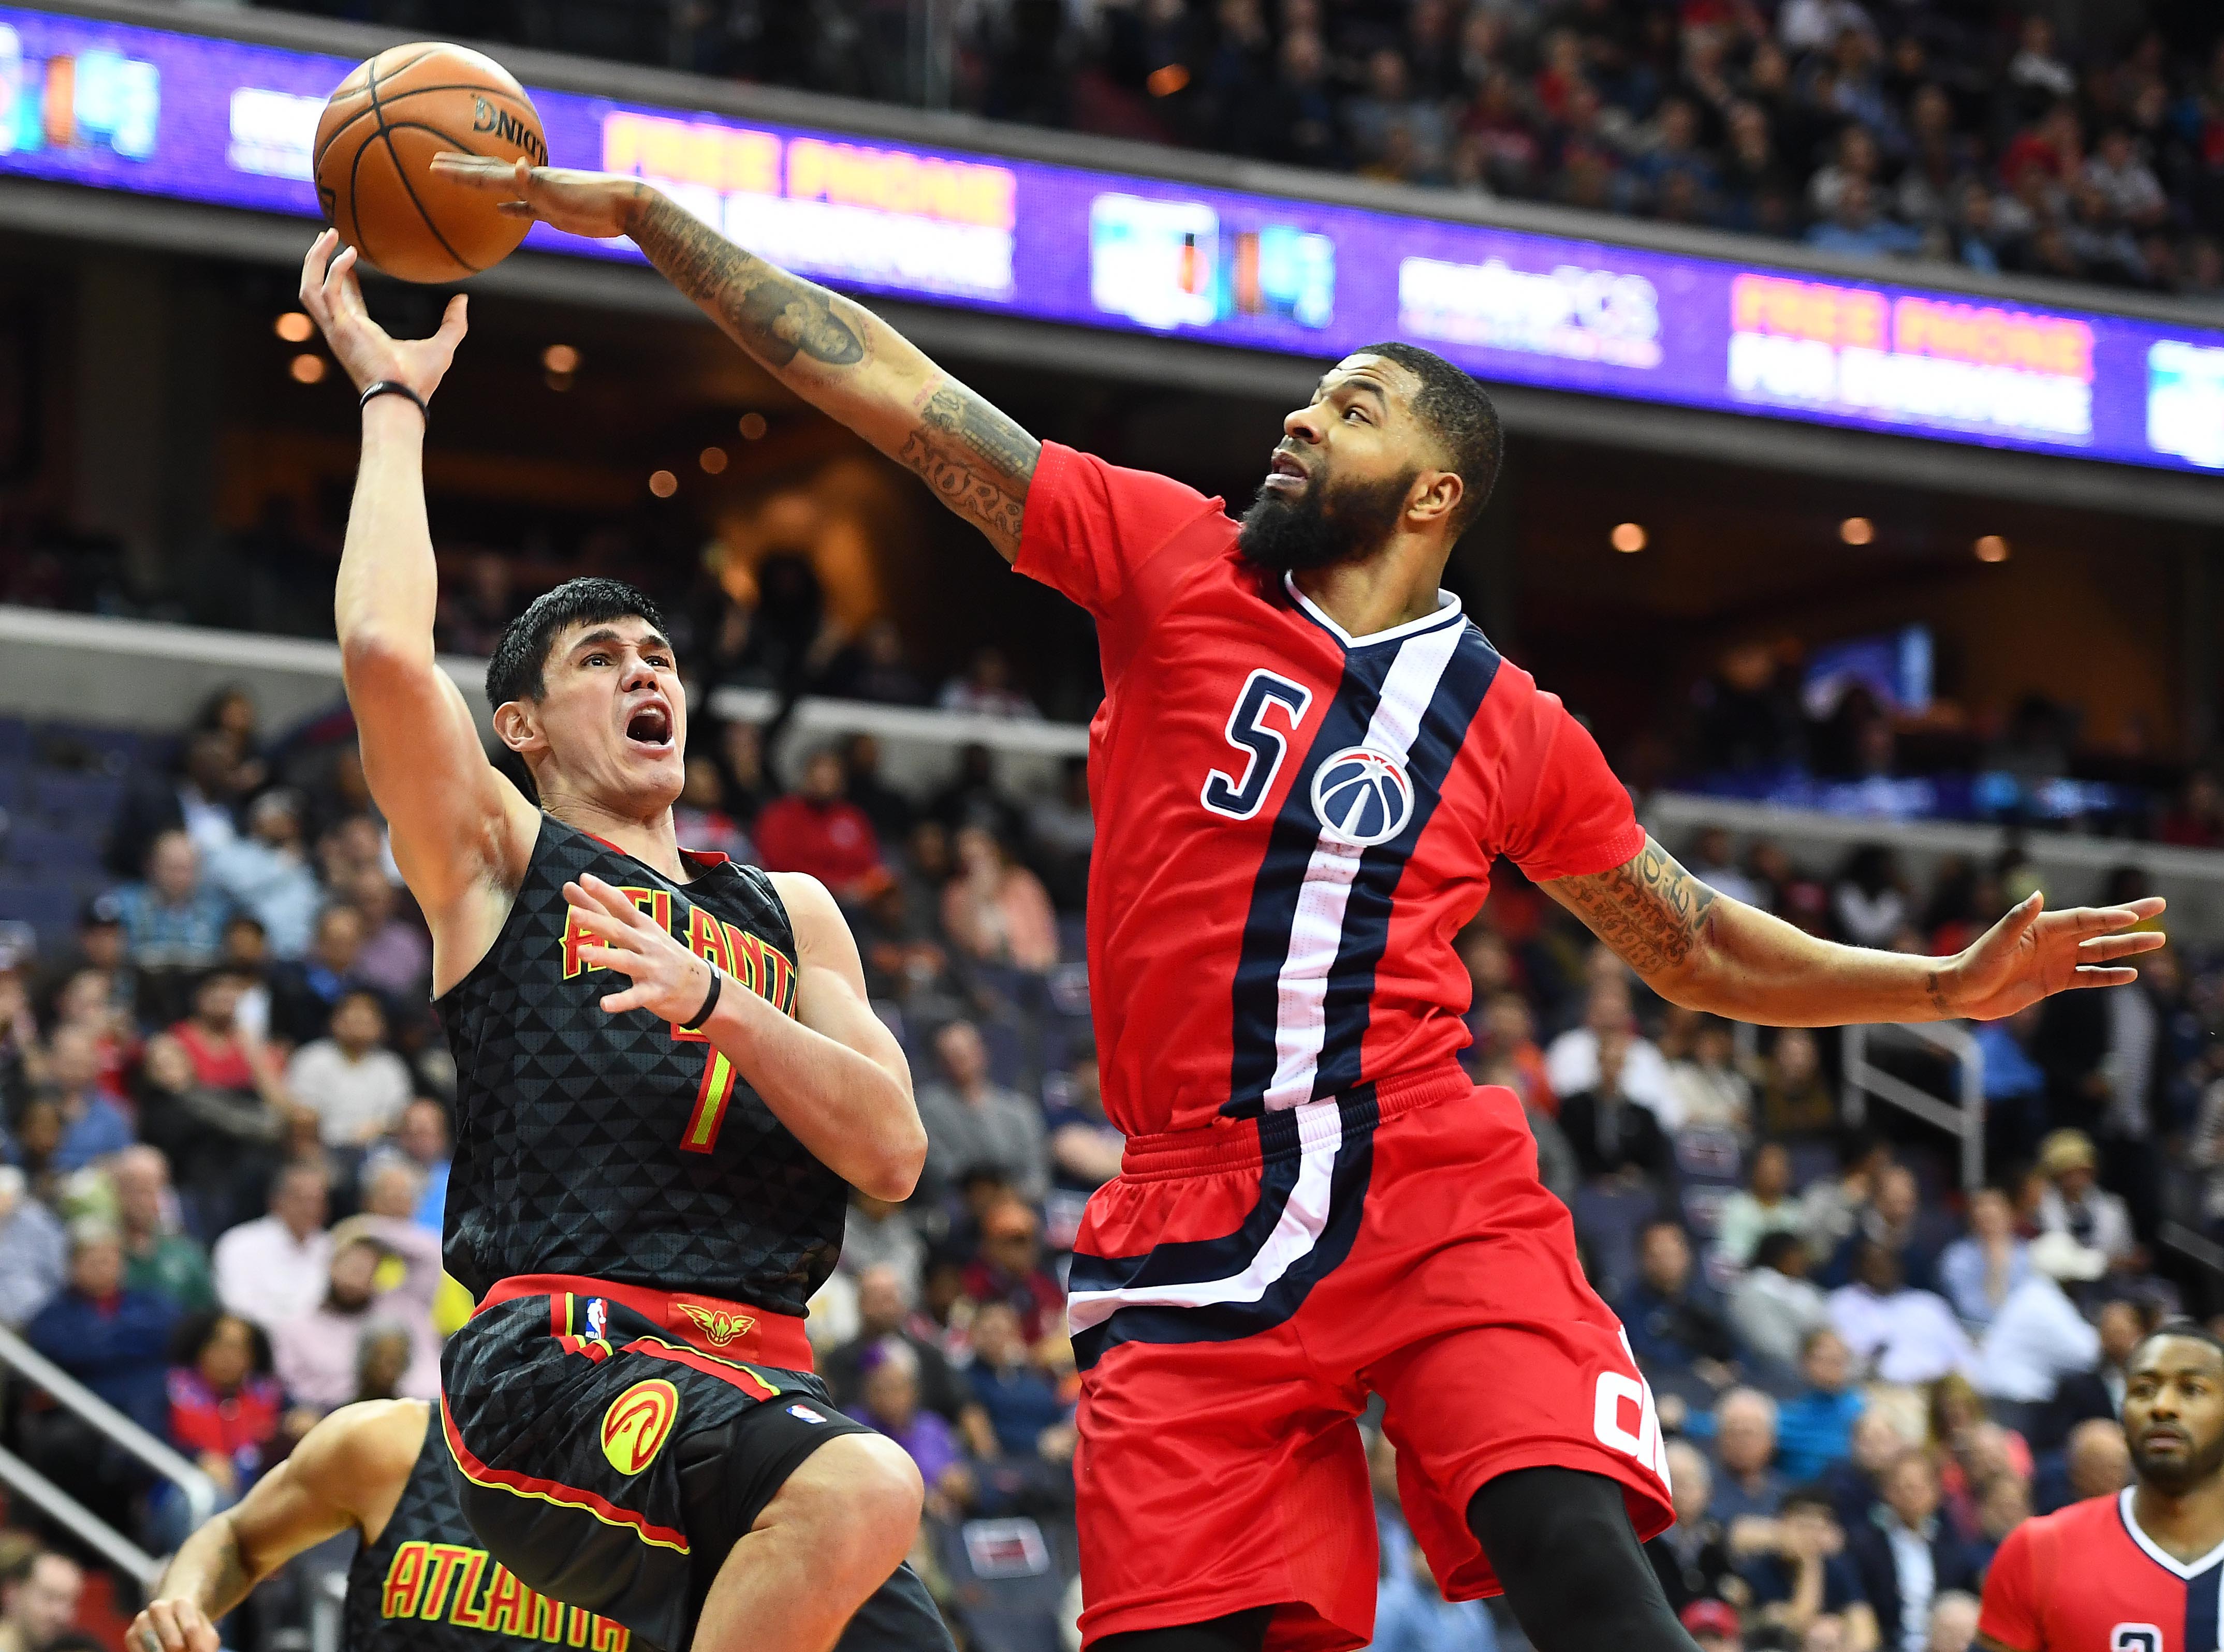 NBA Playoffs 2017: Wizards vs. Hawks Game 1 live stream: Watch online